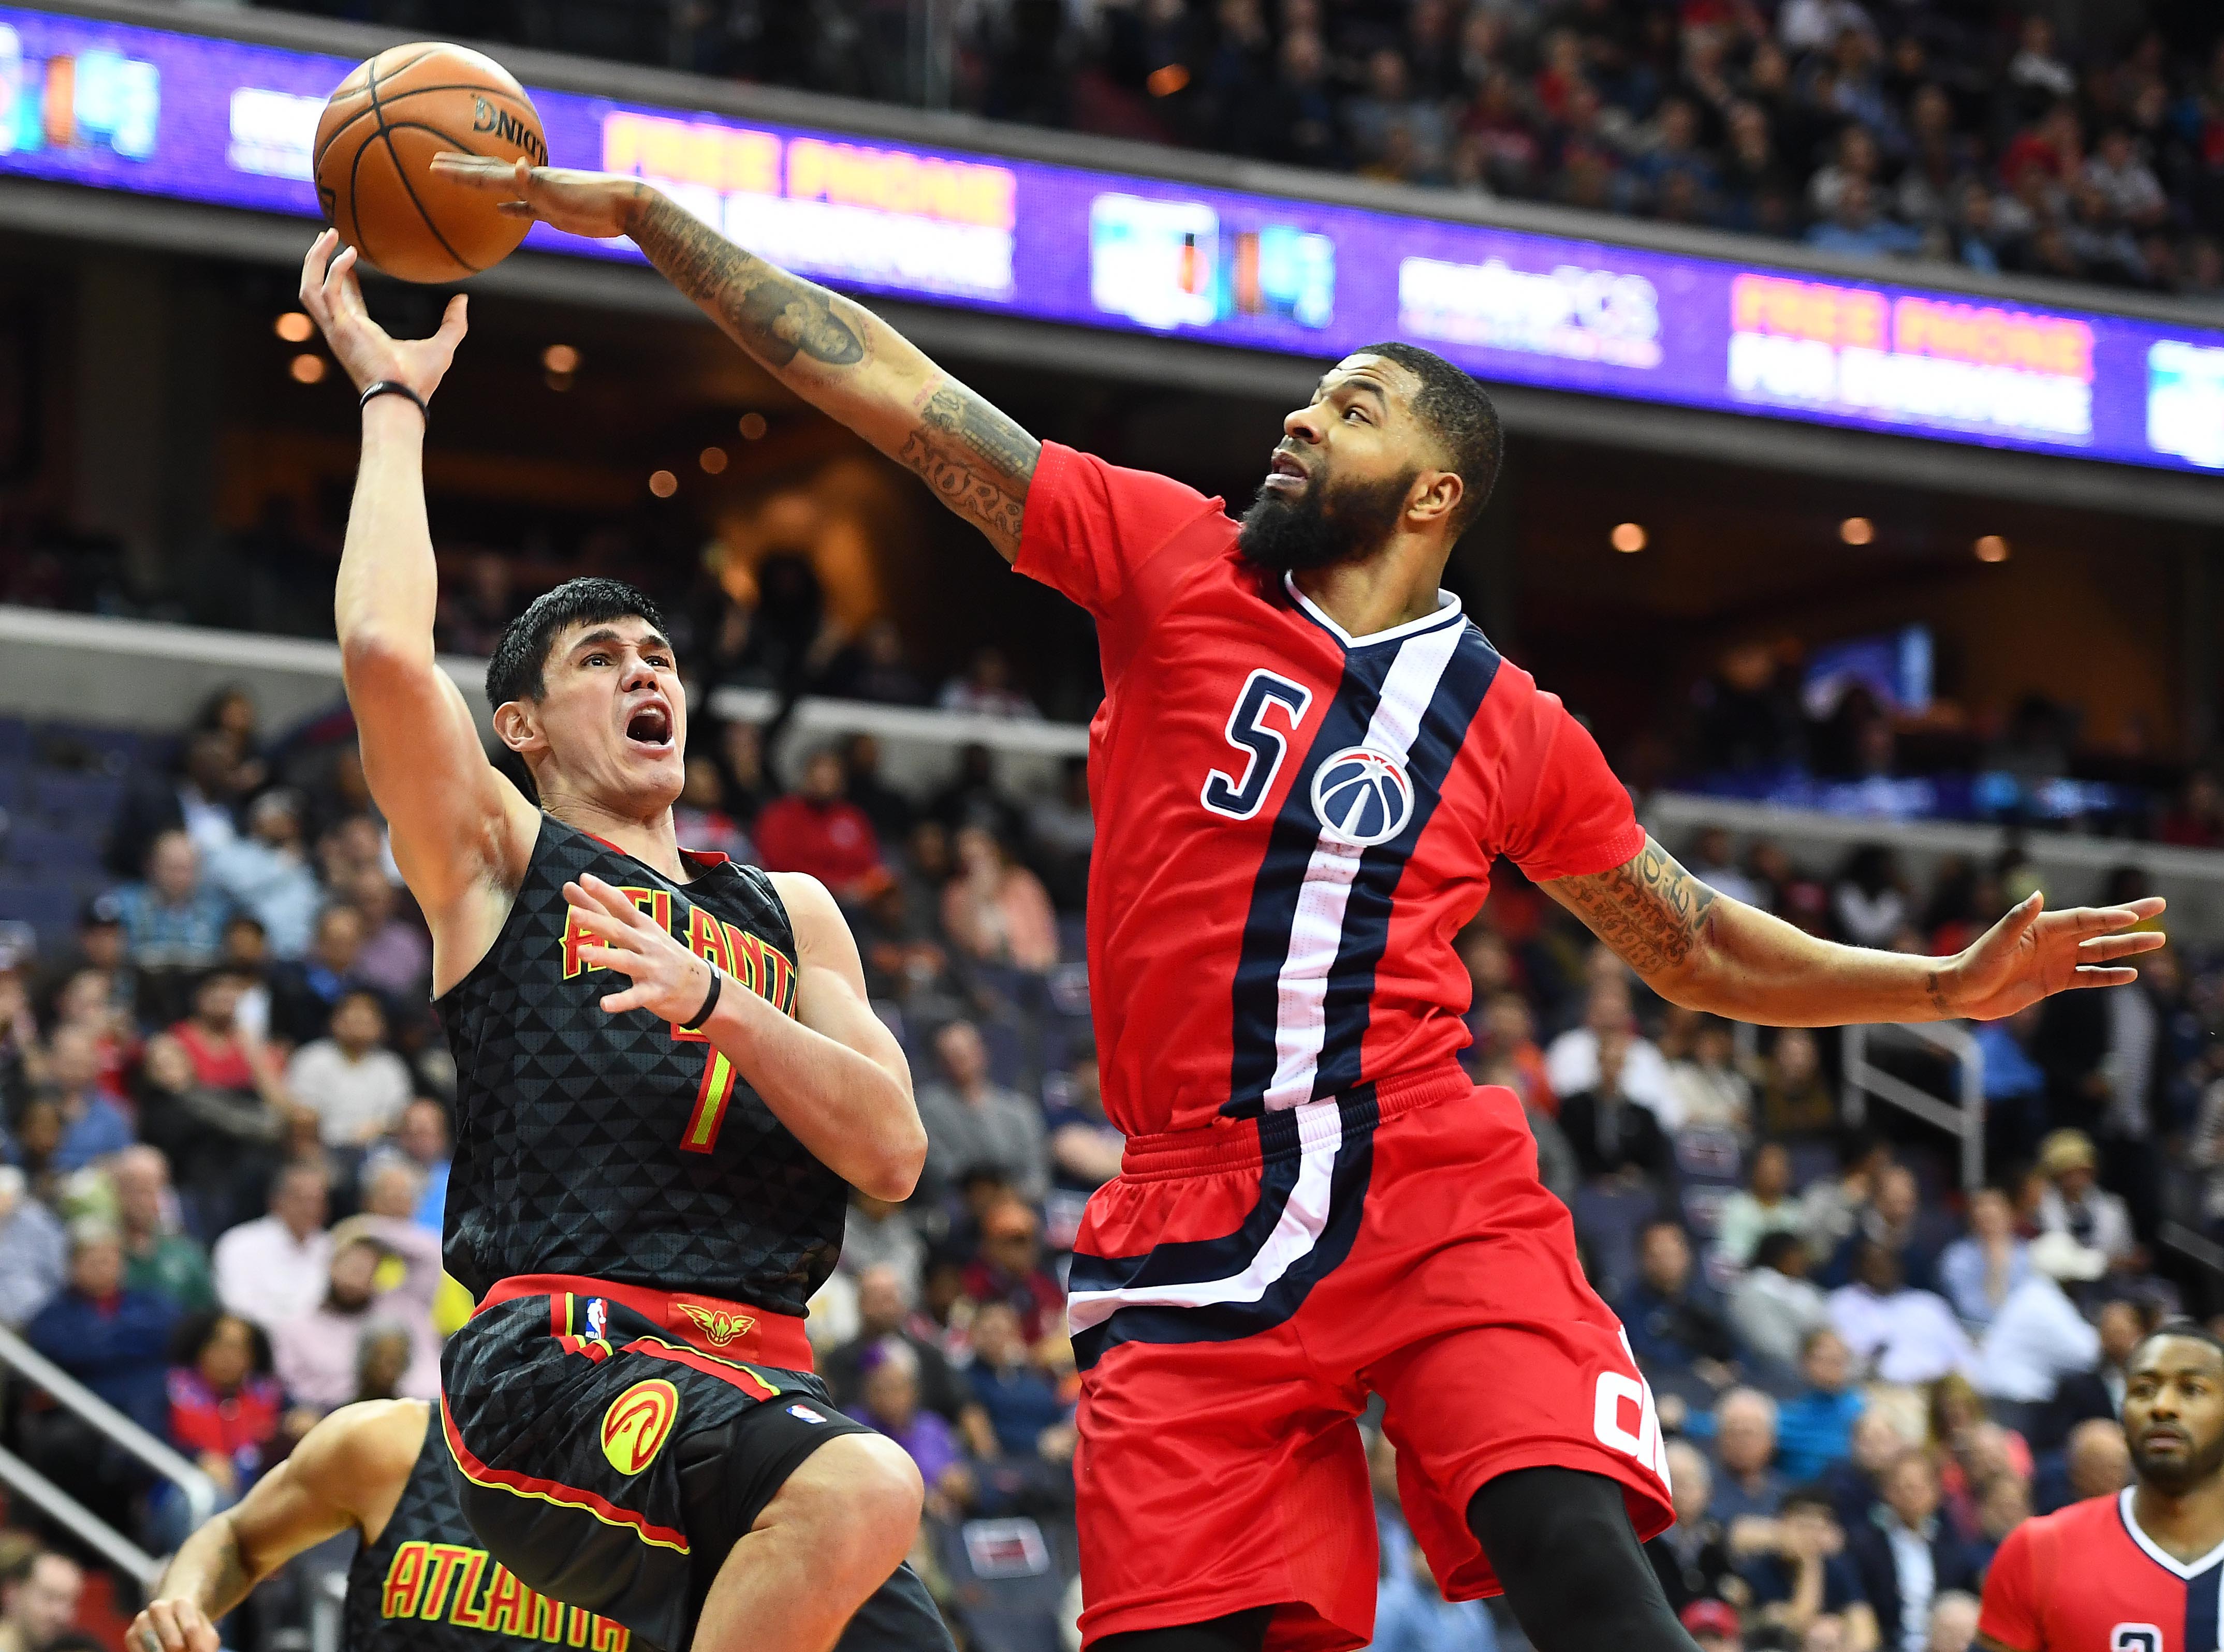 NBA Playoffs 2017: Wizards vs. Hawks Game 1 live stream: Watch online